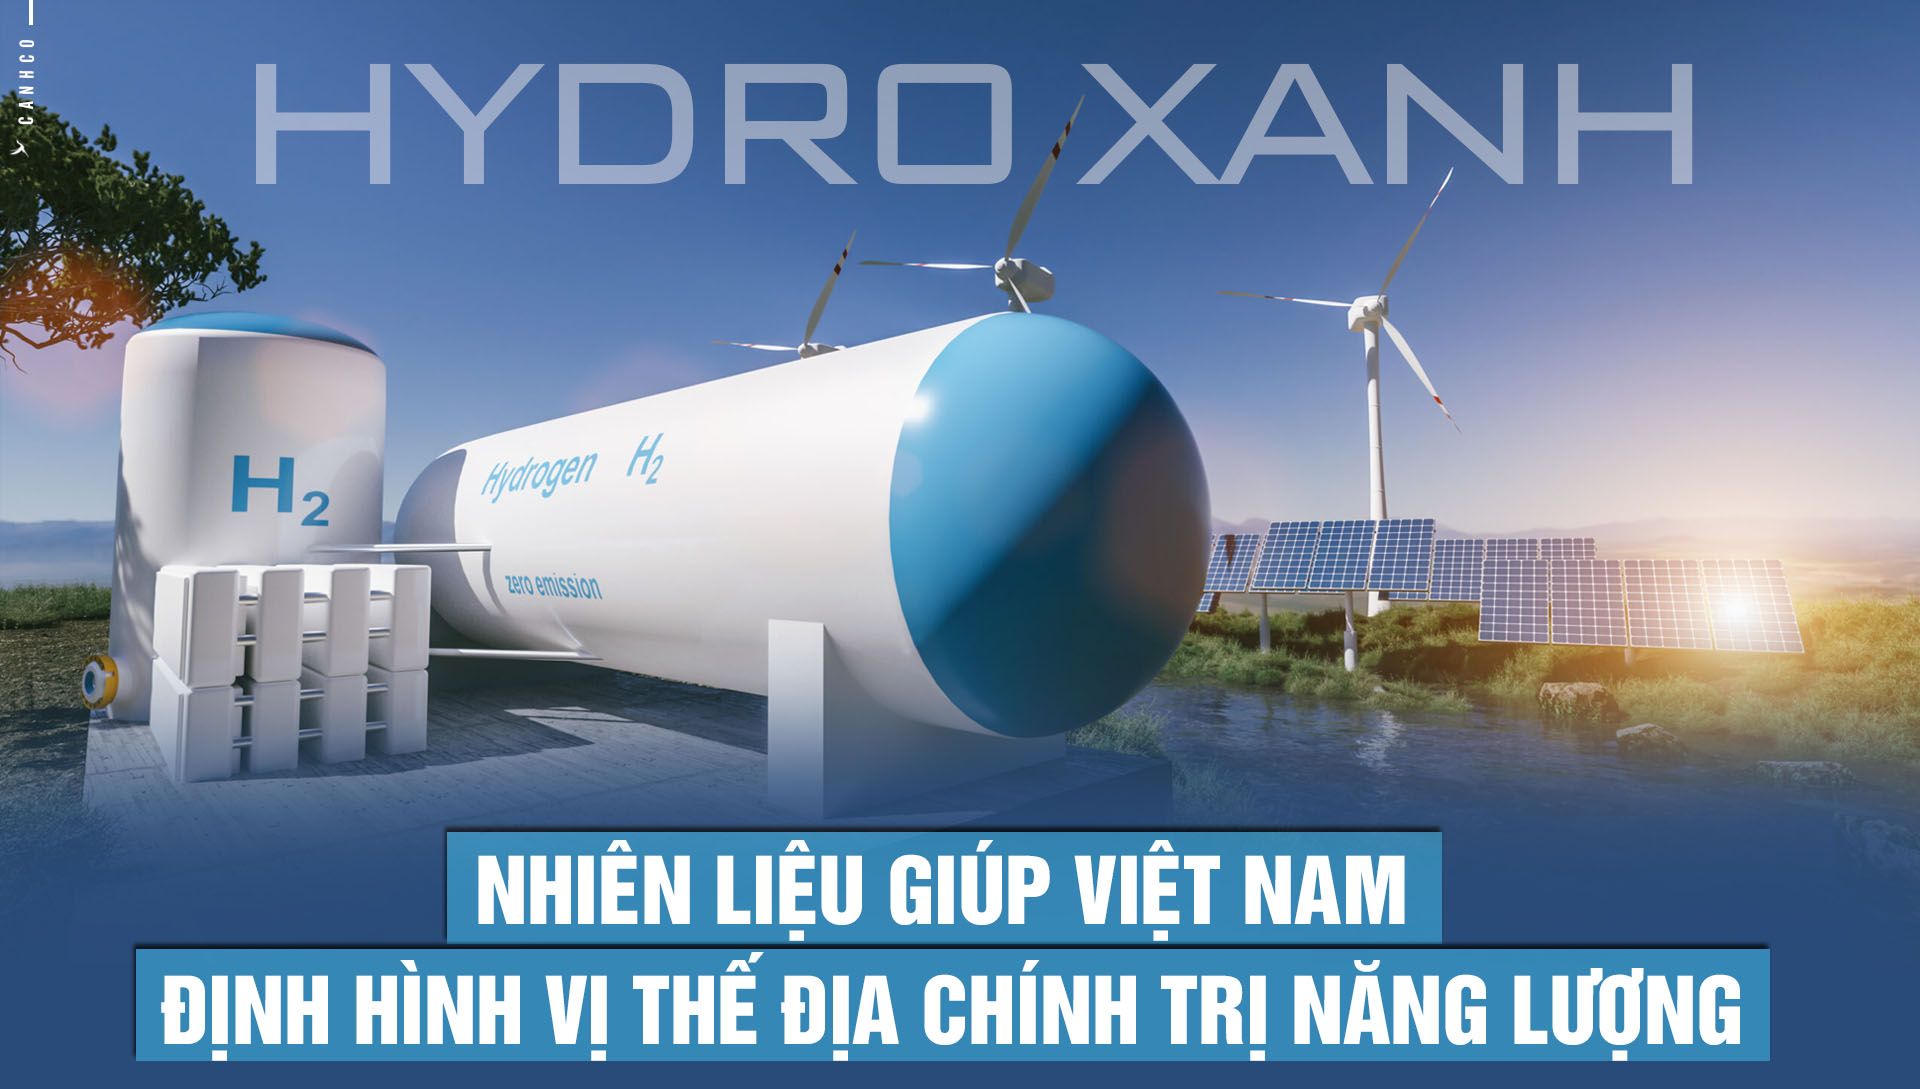 Hydro xanh – nhiên liệu giúp Việt Nam định hình vị thế địa chính trị năng lượng